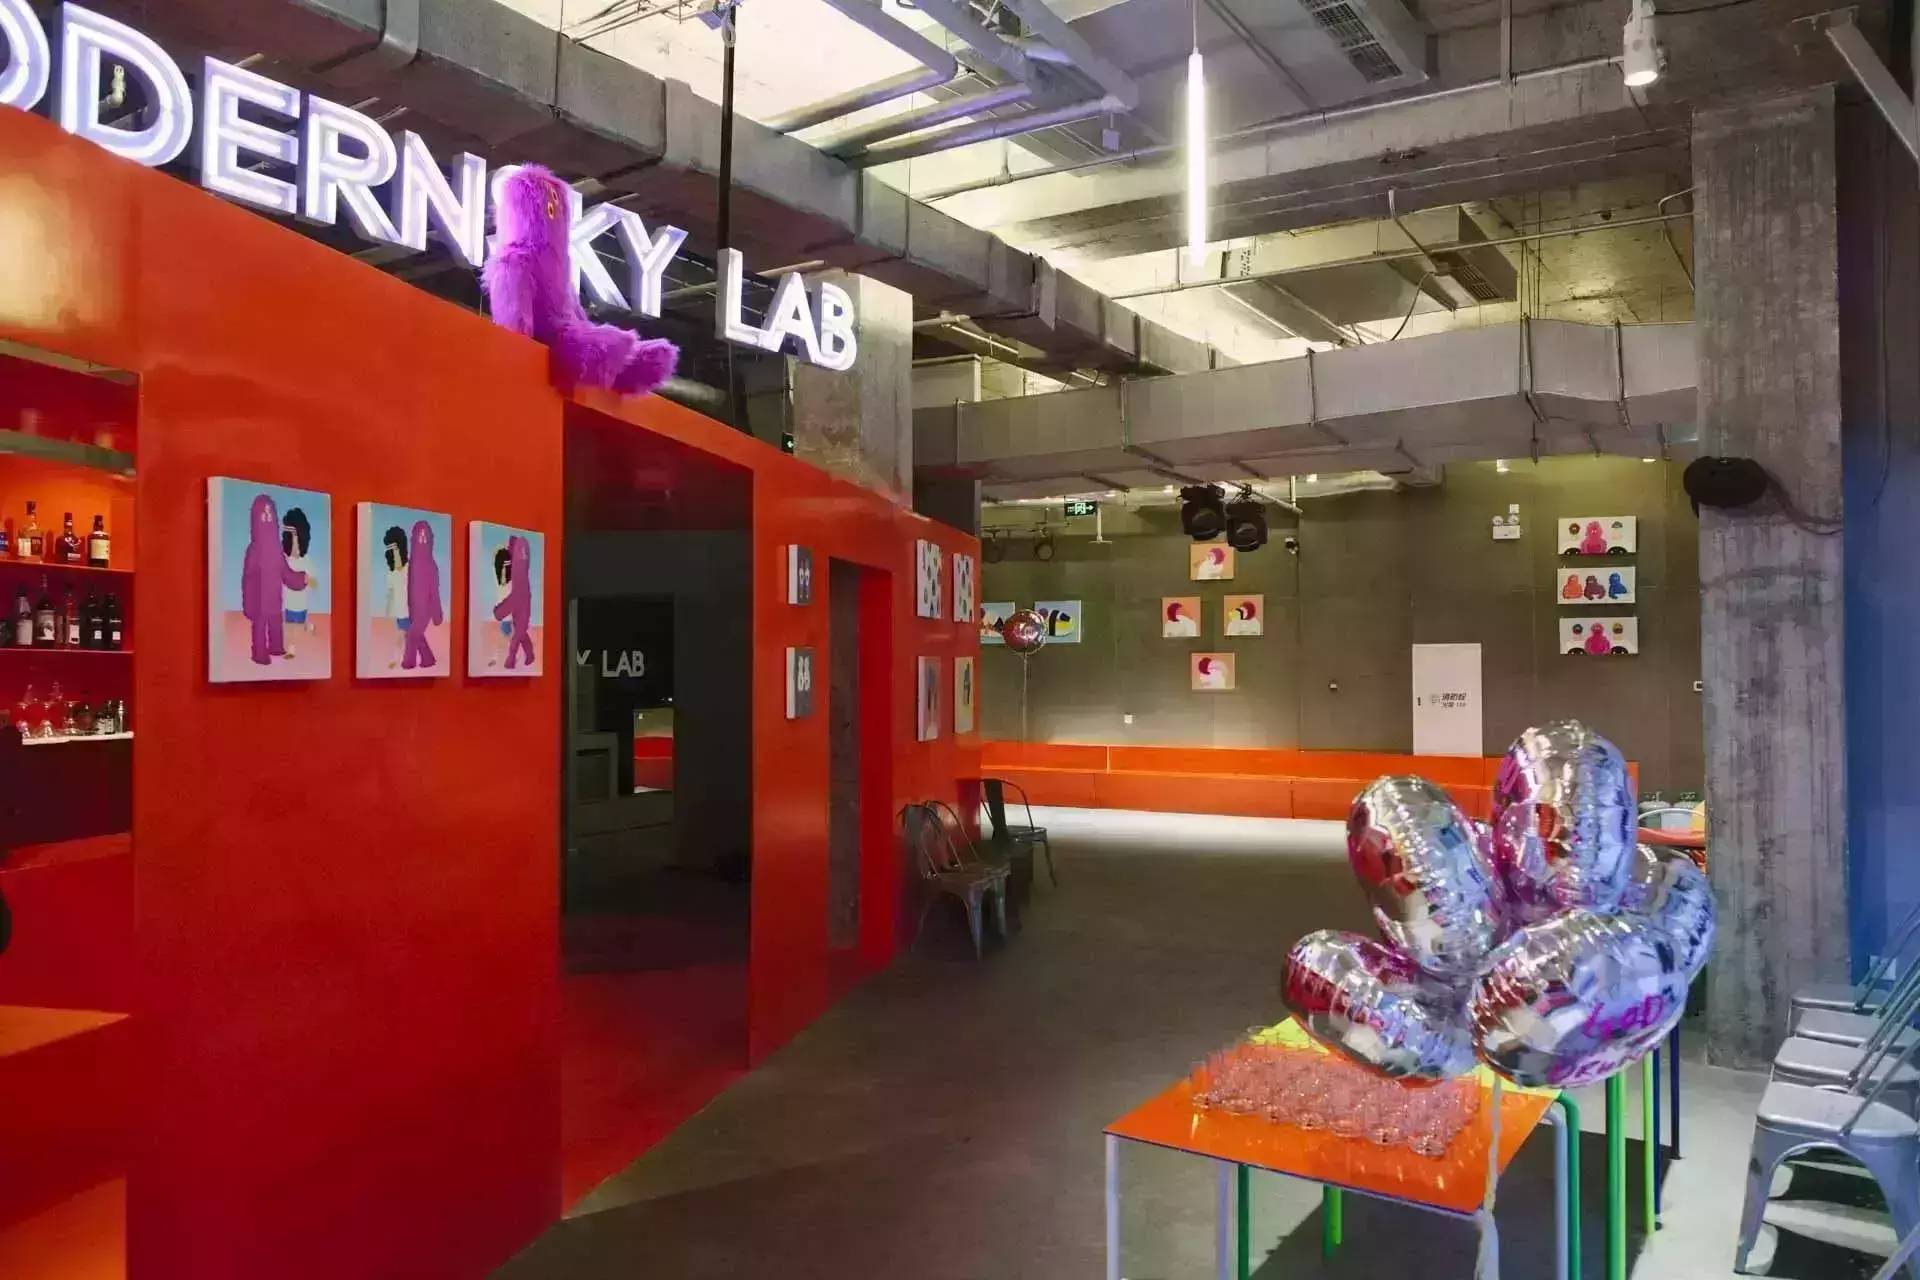 摩登天空 Modernsky Lab将首次落地沪上 丨与全上海一起发现有趣生活